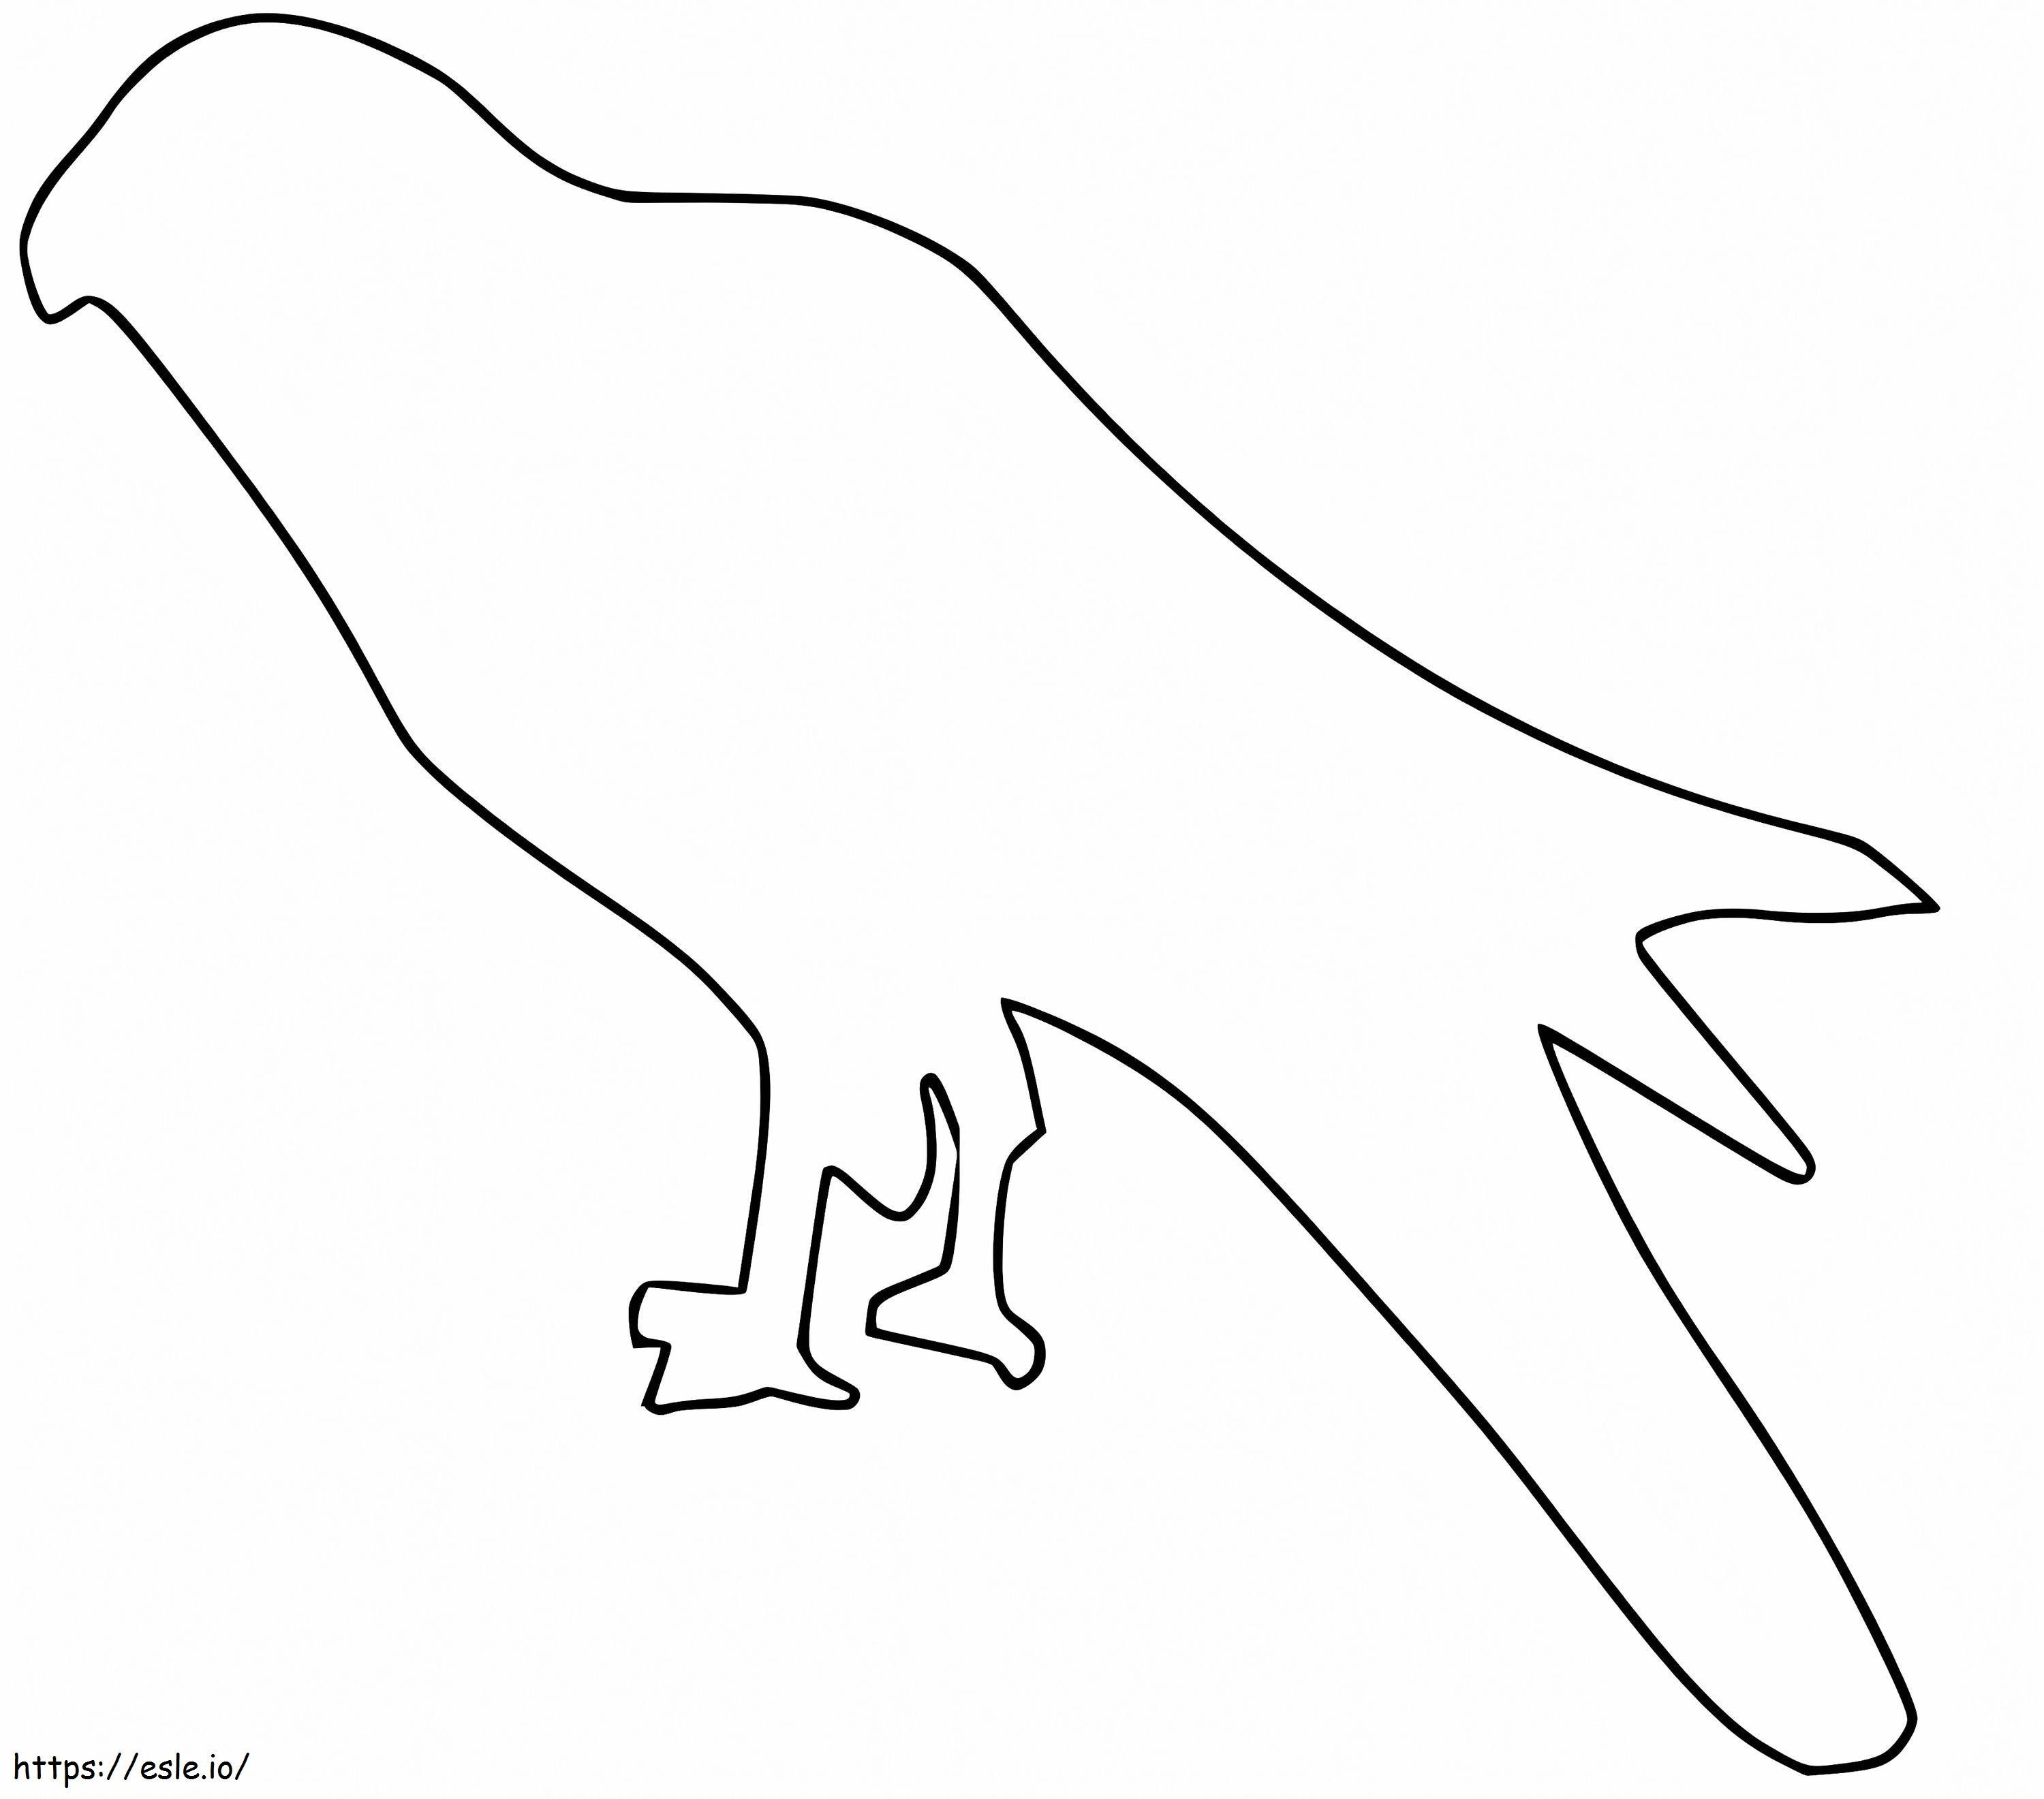 Drachenvogel-Umriss ausmalbilder